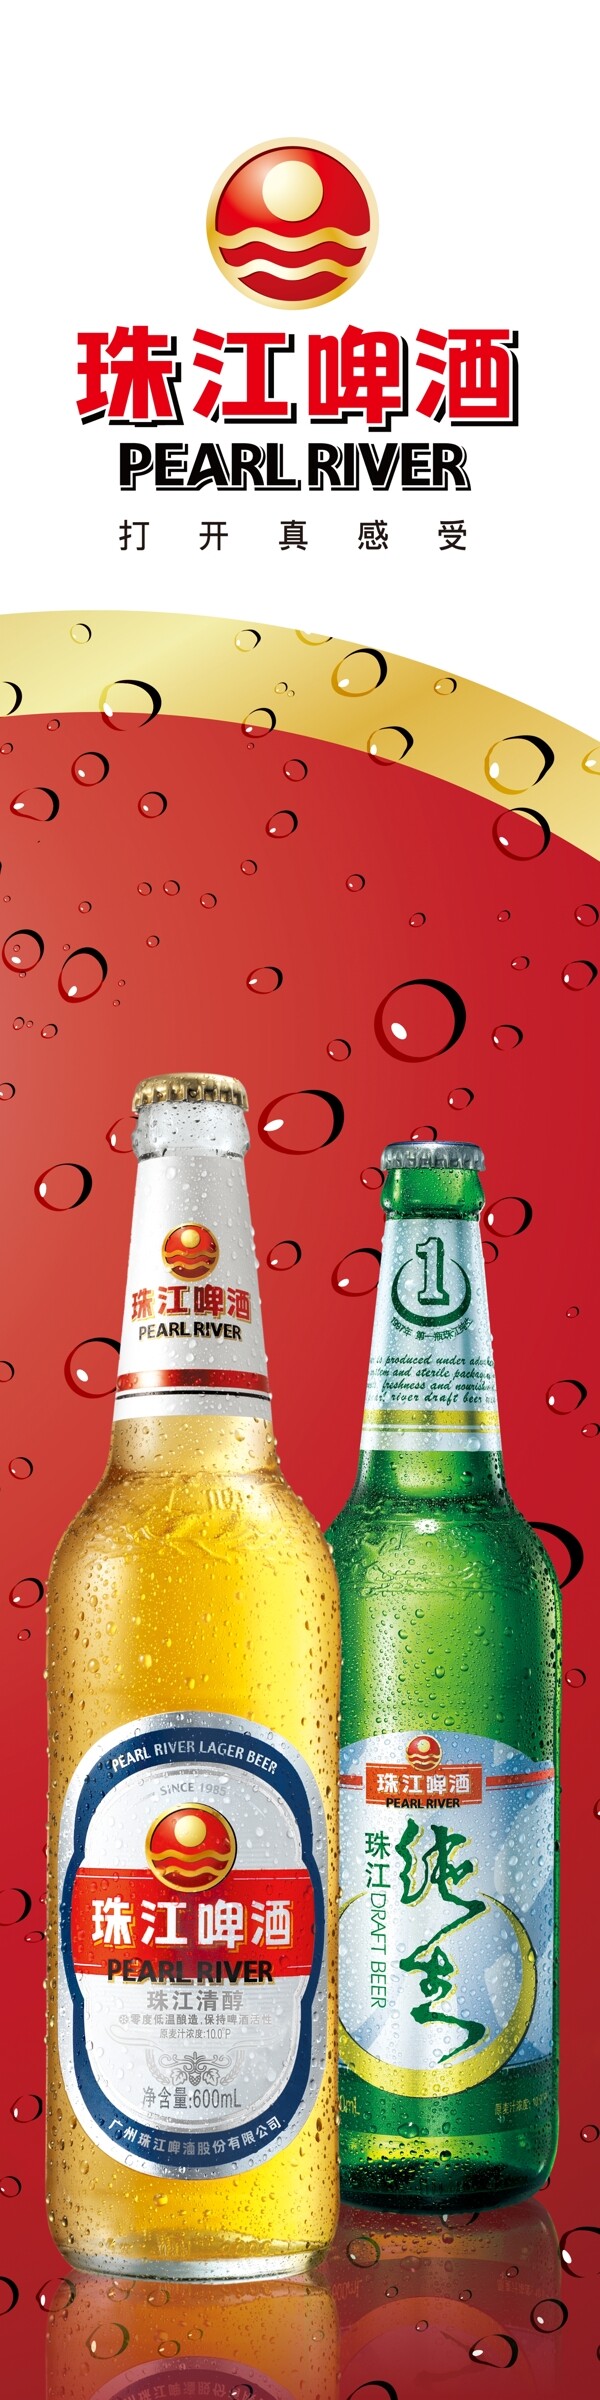 珠江纯生啤酒陈列架图片